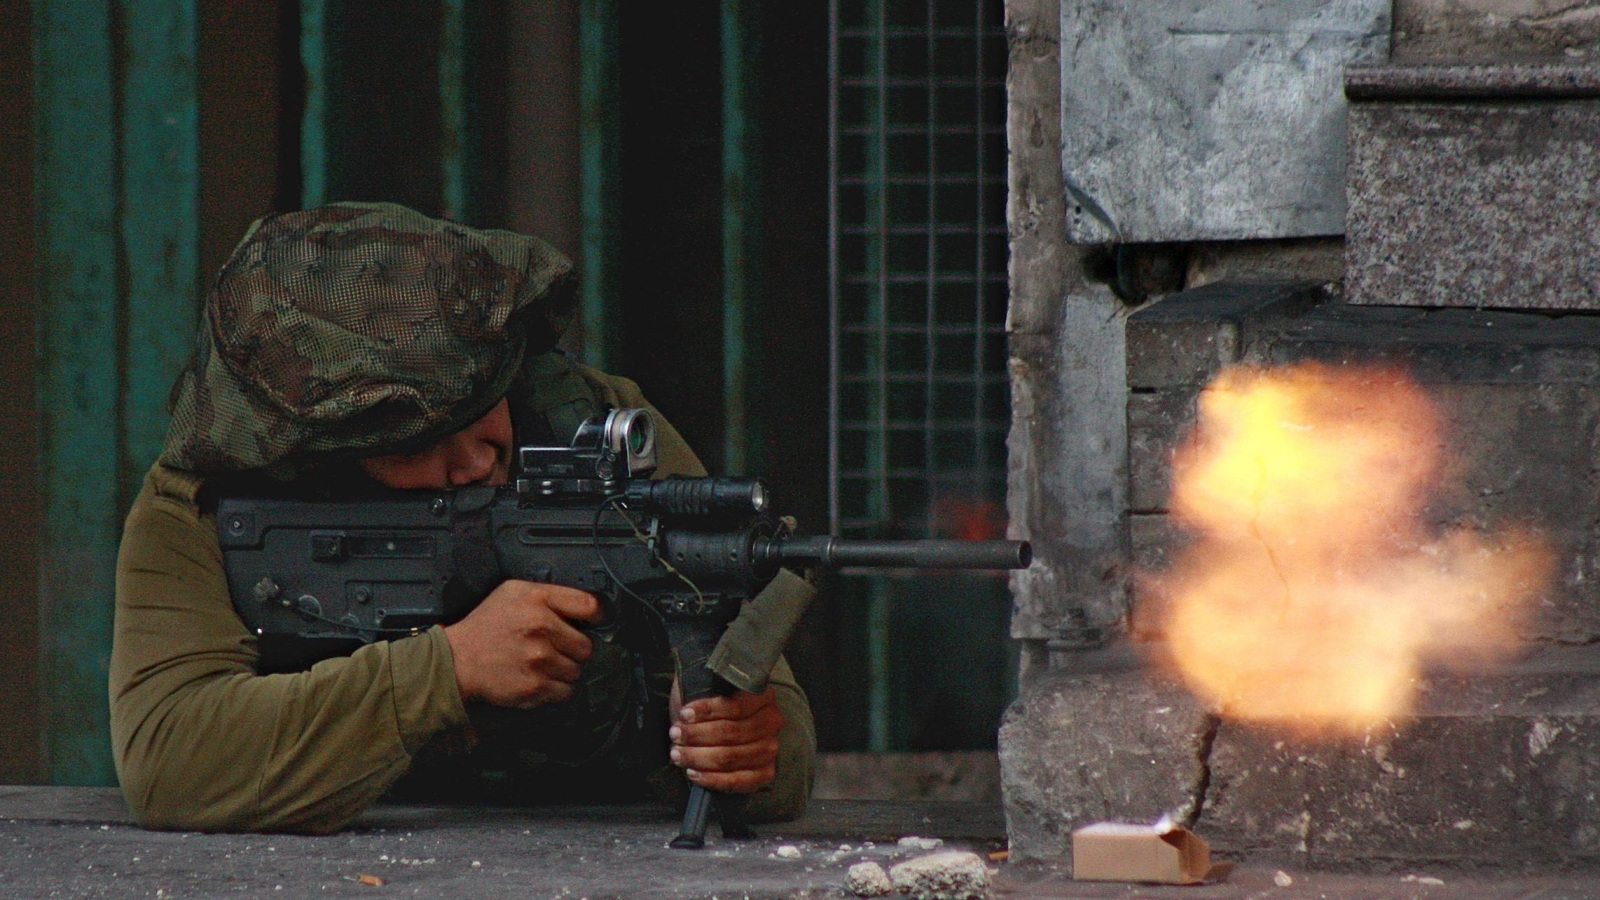 جندي إسرائيلي يصوب رصاص بندقيته تجاه متظاهرين في الخليل (الأوروبية)